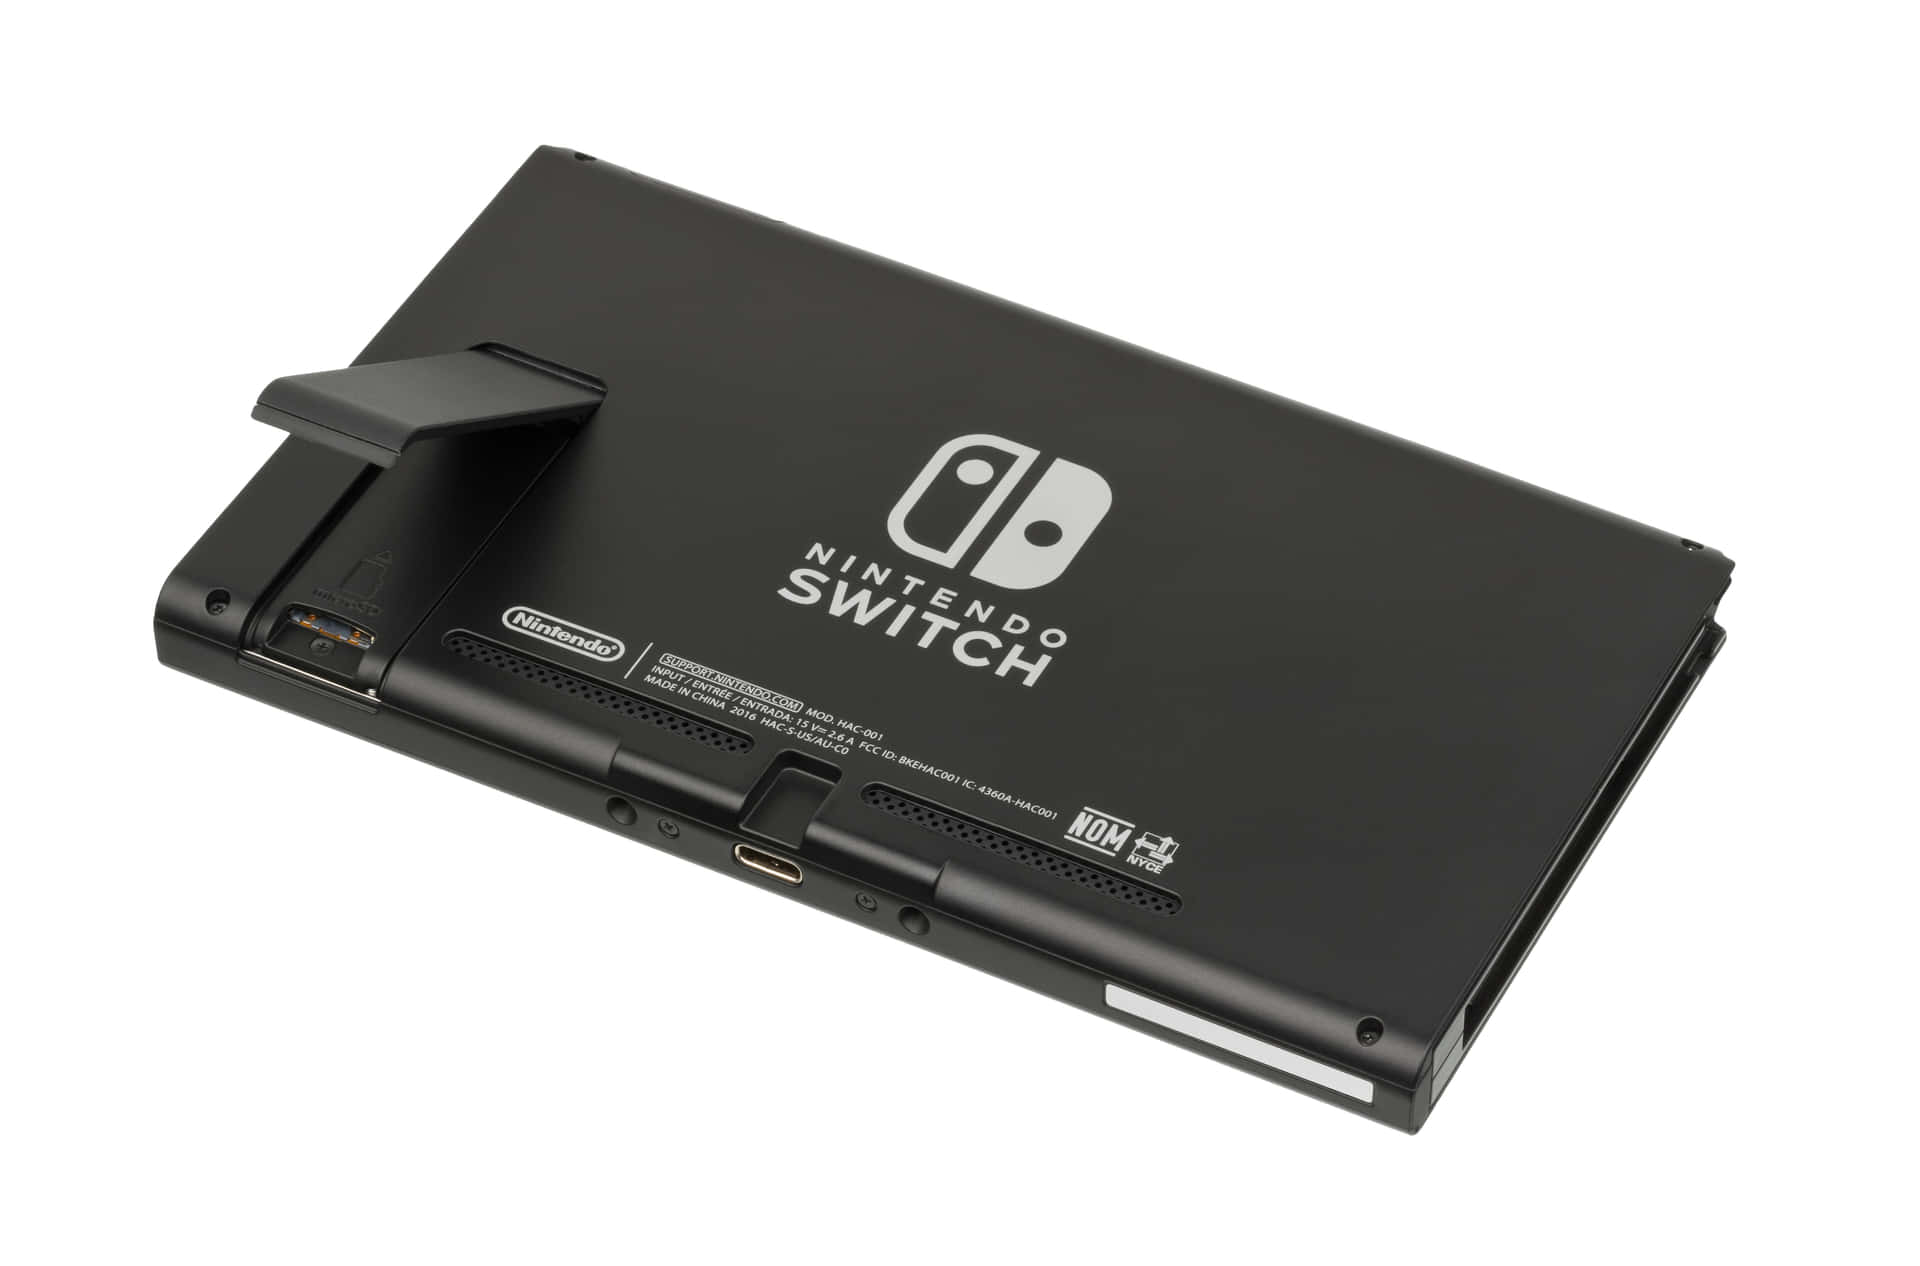 Spieledie Besten Spiele Mit Nintendo Switch.